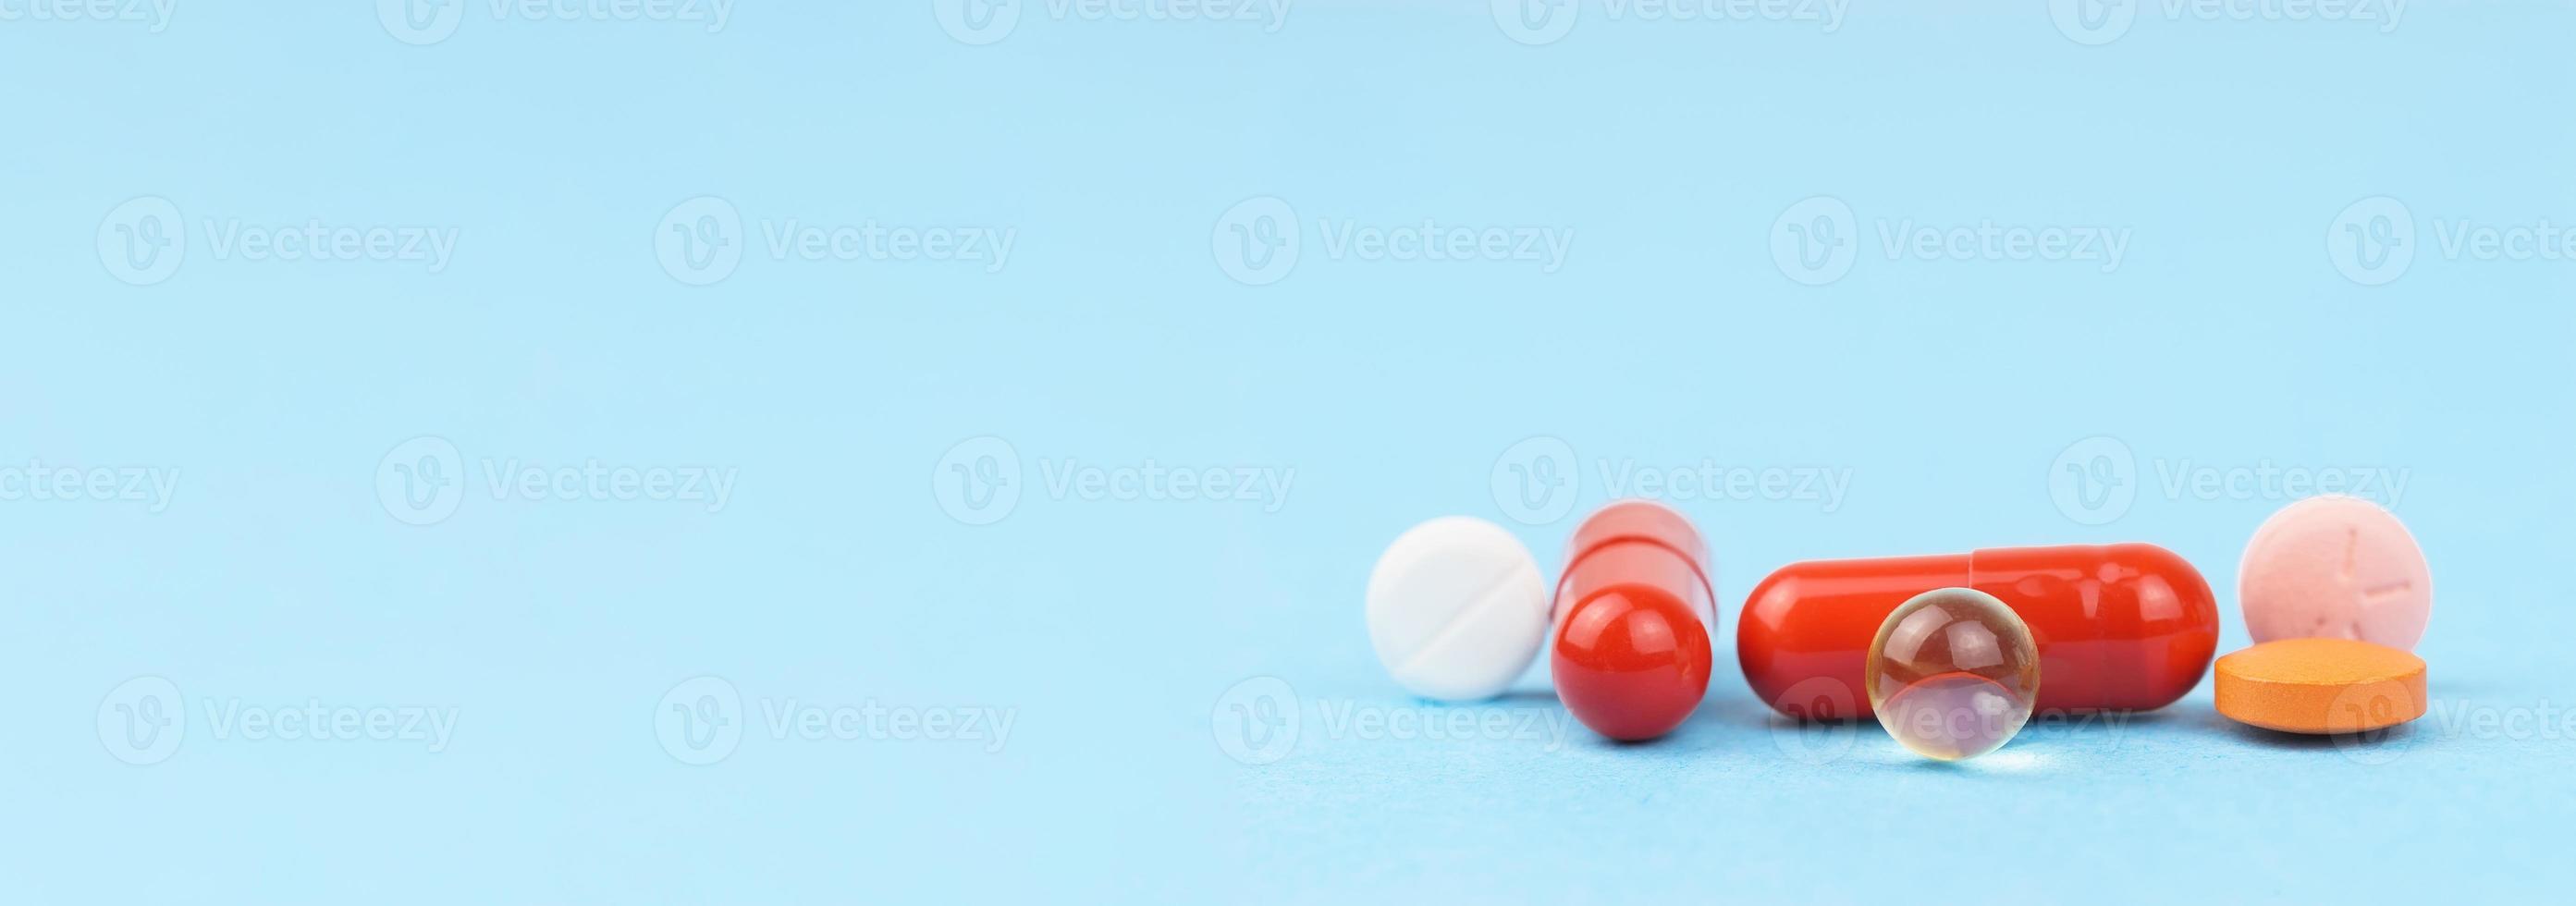 sortiert pharmazeutische Medizin Pillen, Tablets und Kapseln Über Blau Hintergrund foto